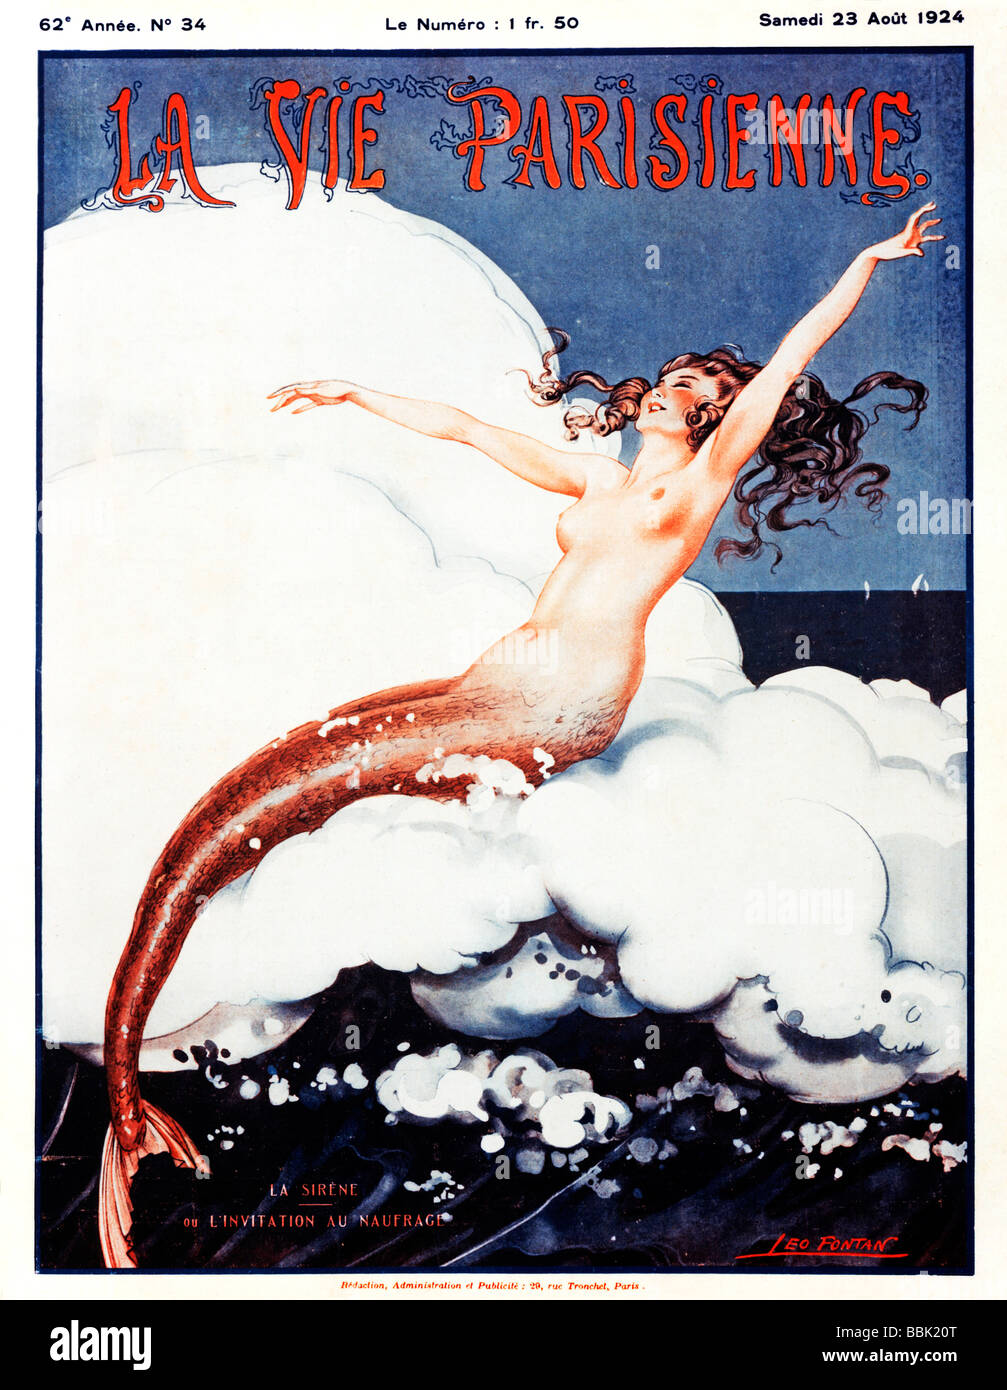 Invito a un naufragio la sirena chiede il passaggio di imbarcazioni sulle sue rocce in questo 1920s illustrazione francese Foto Stock